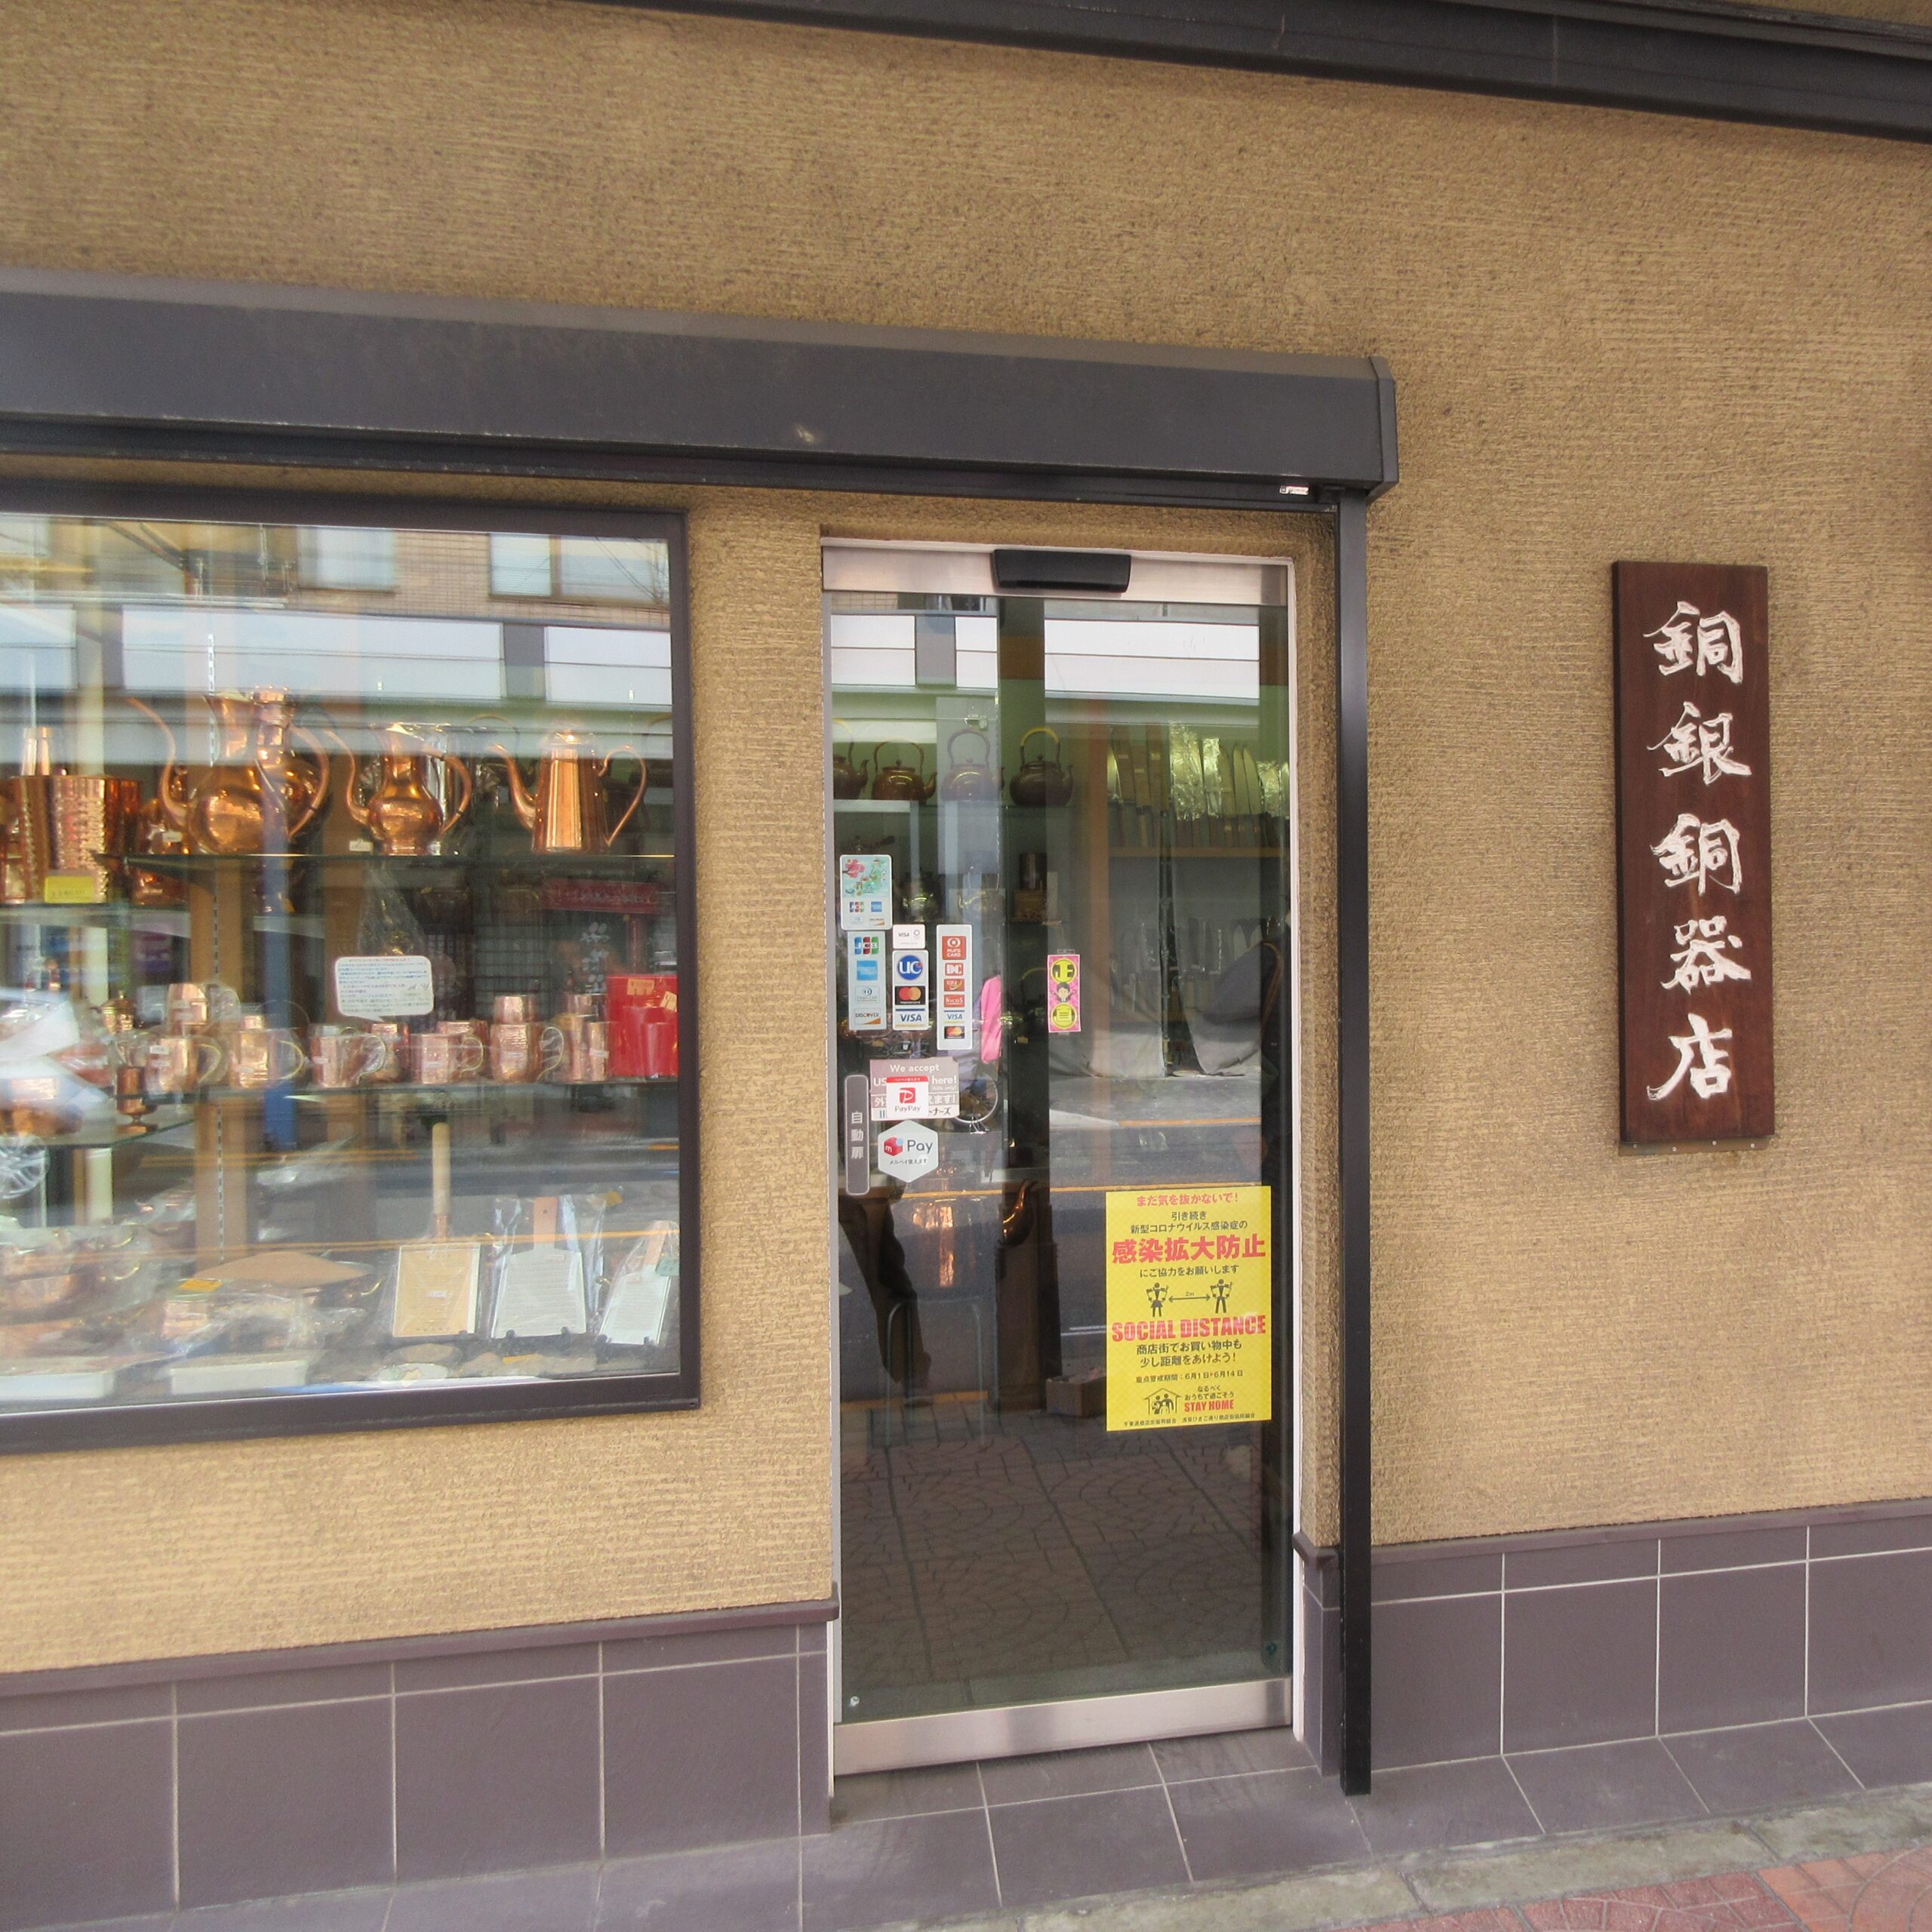 銅銀銅器店| Senzoku Dori Shopping Street